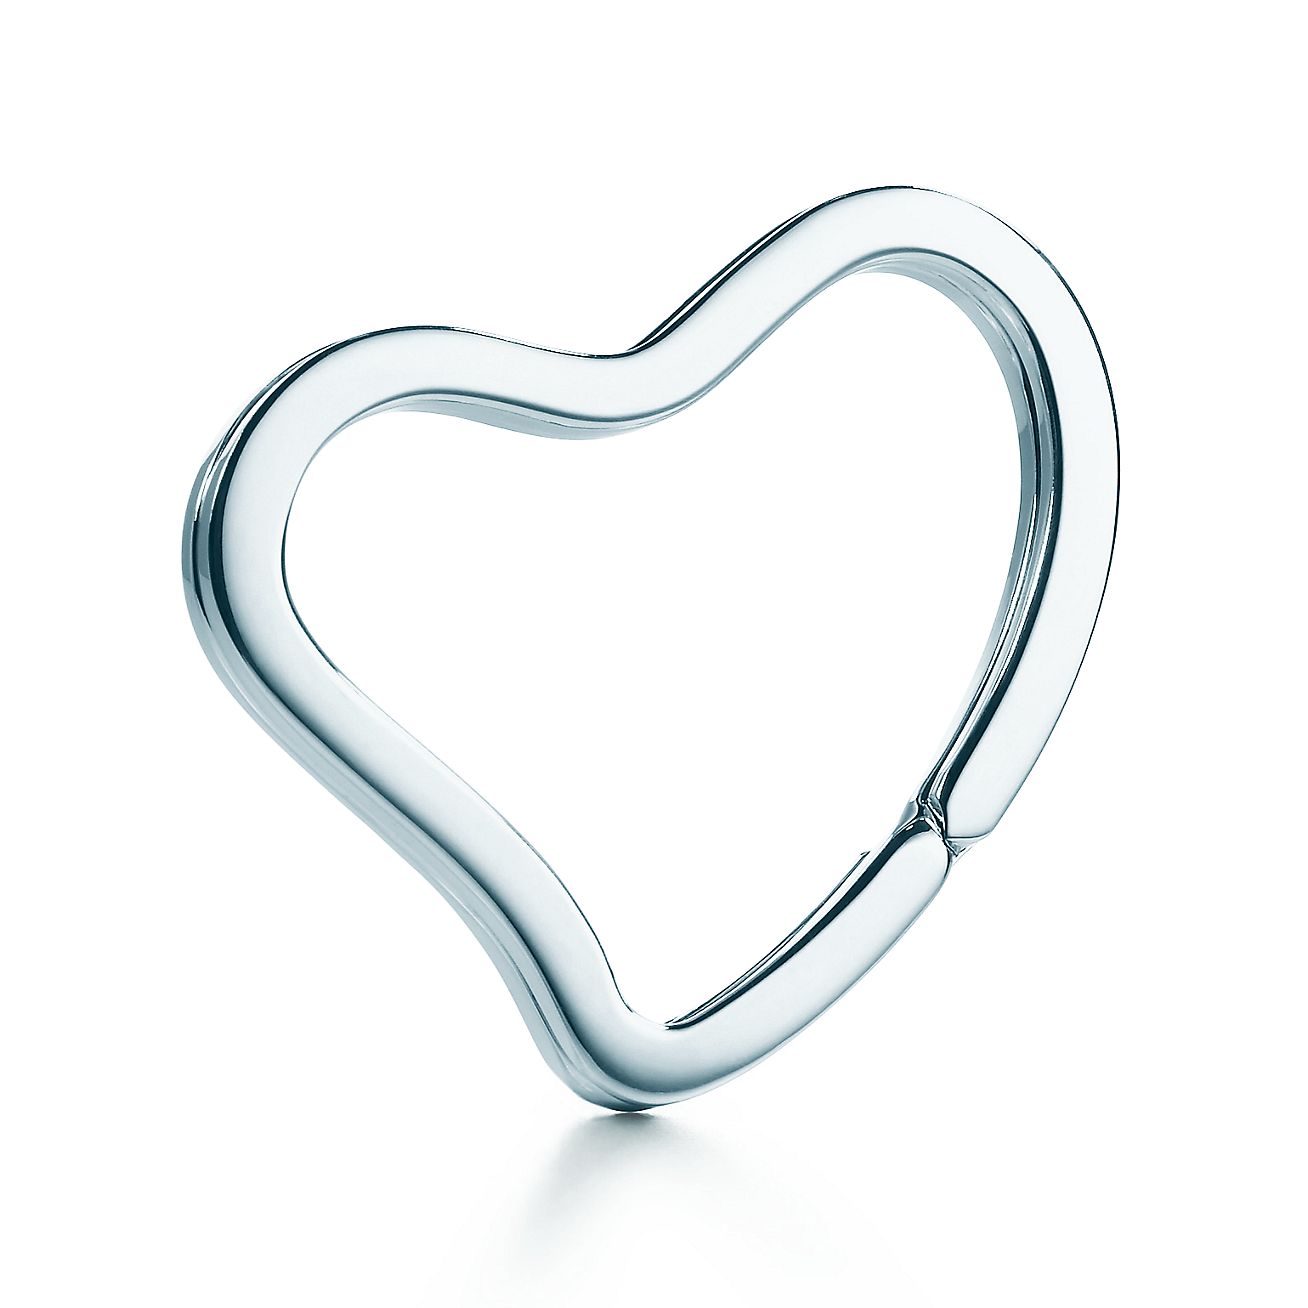 tiffany heart key chain